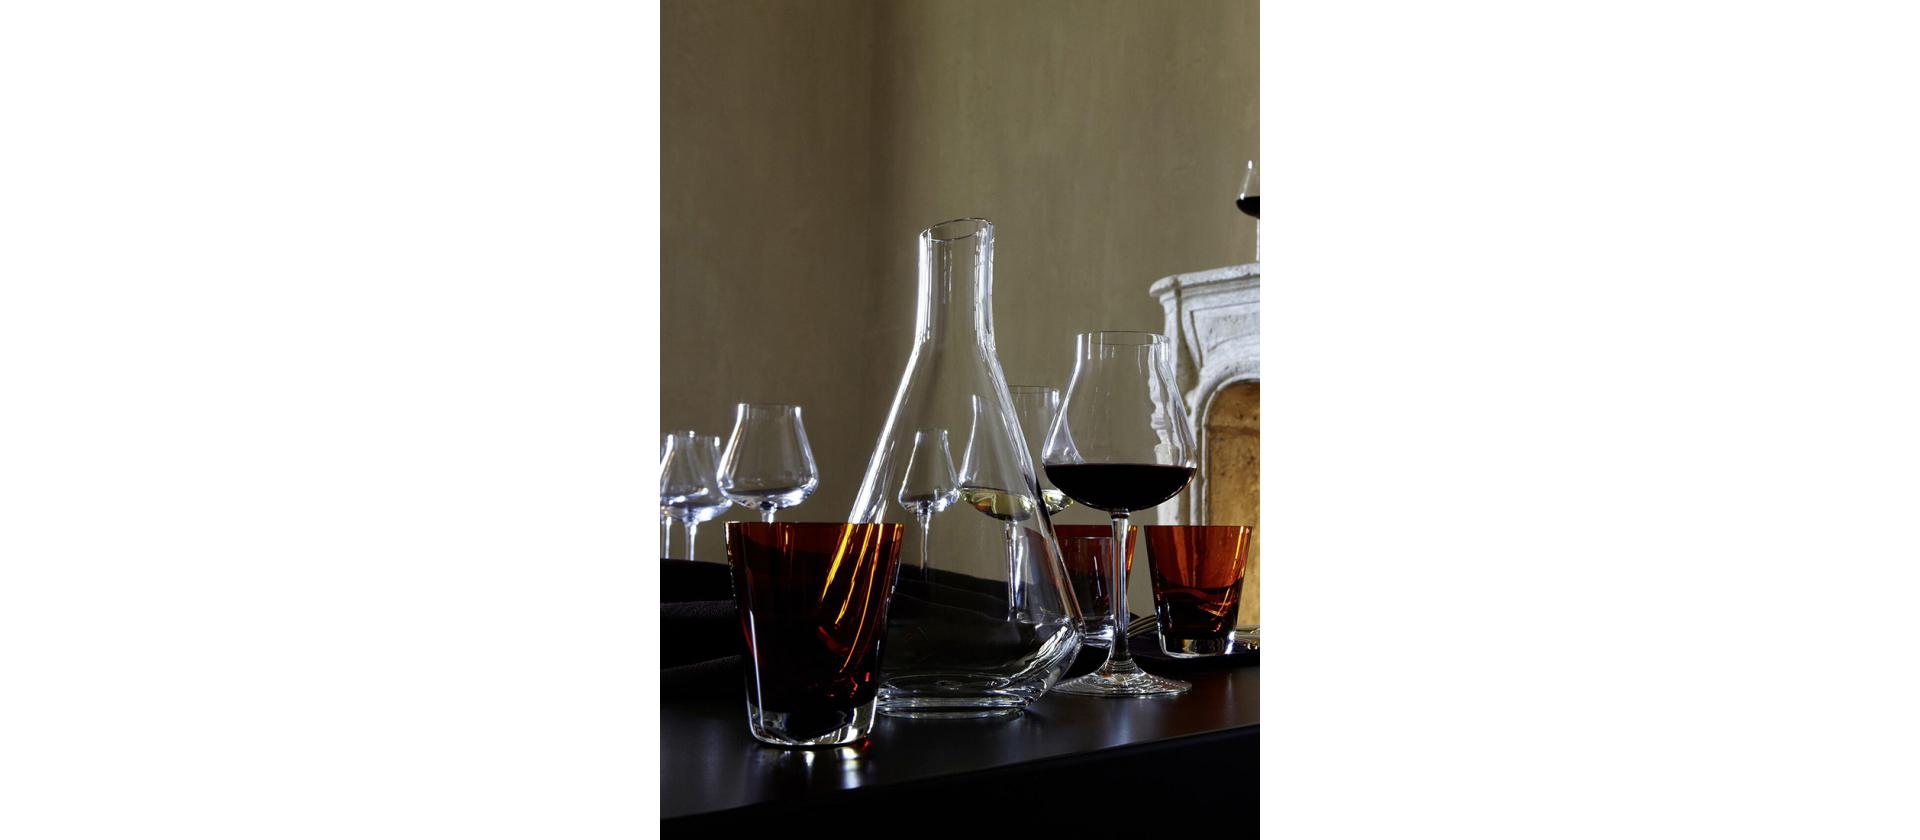 Baccarat Chateau wine glass set 2 pcs big